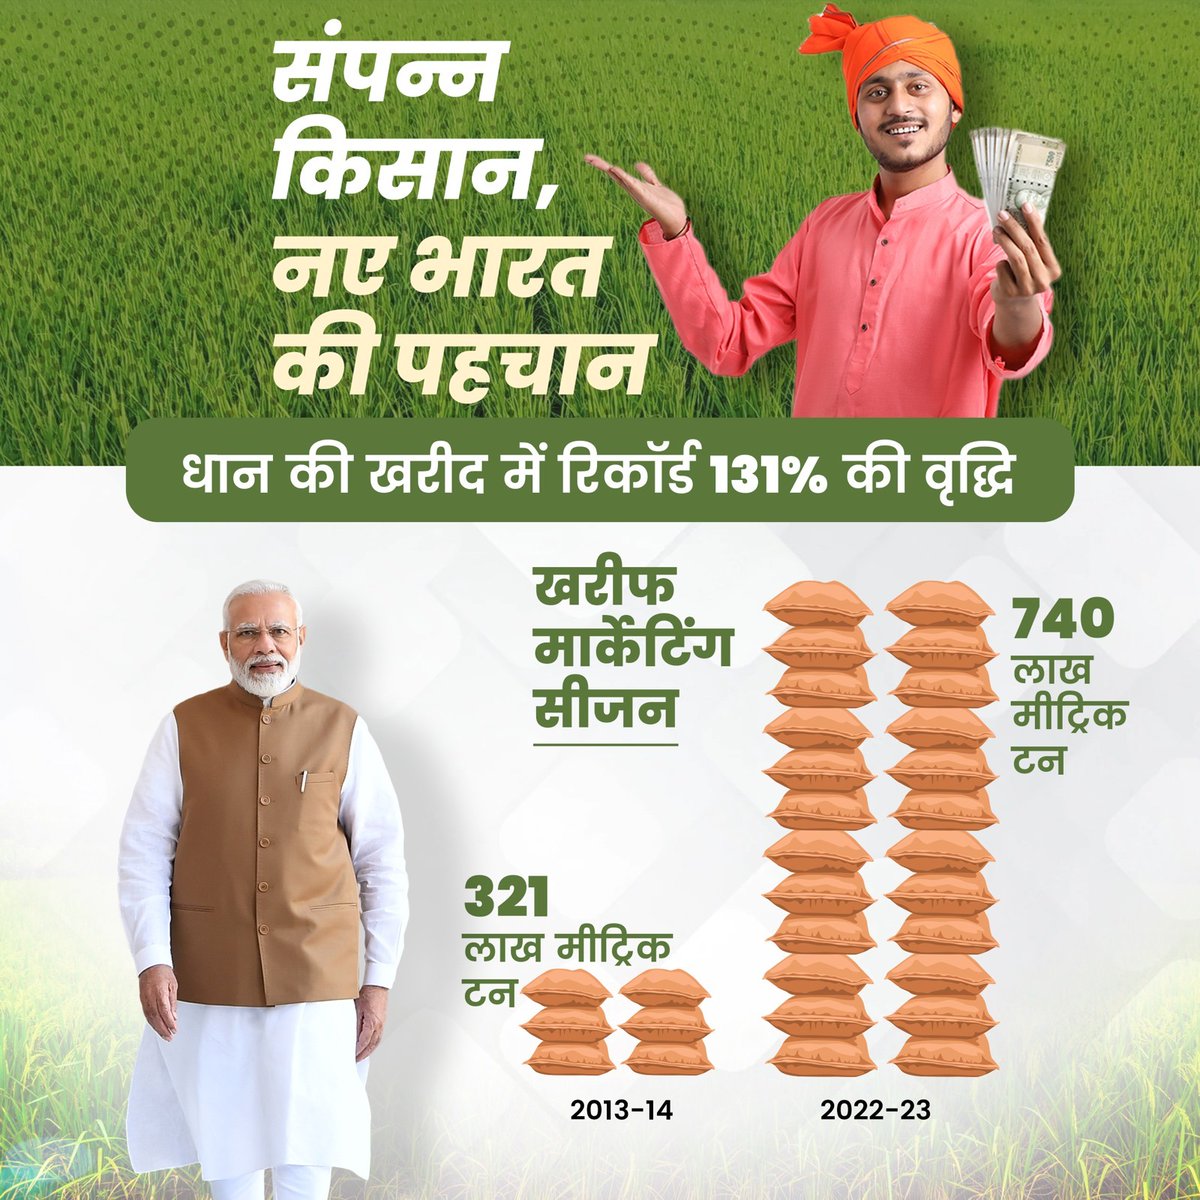 संपन्न किसान, नए भारत की पहचान!

खरीफ मार्केट सीजन वर्ष 2013-14 की तुलना में वर्ष 2022-23 के दौरान, धान की खरीद में रिकॉर्ड 131% की वृद्धि दर्ज की गई है।